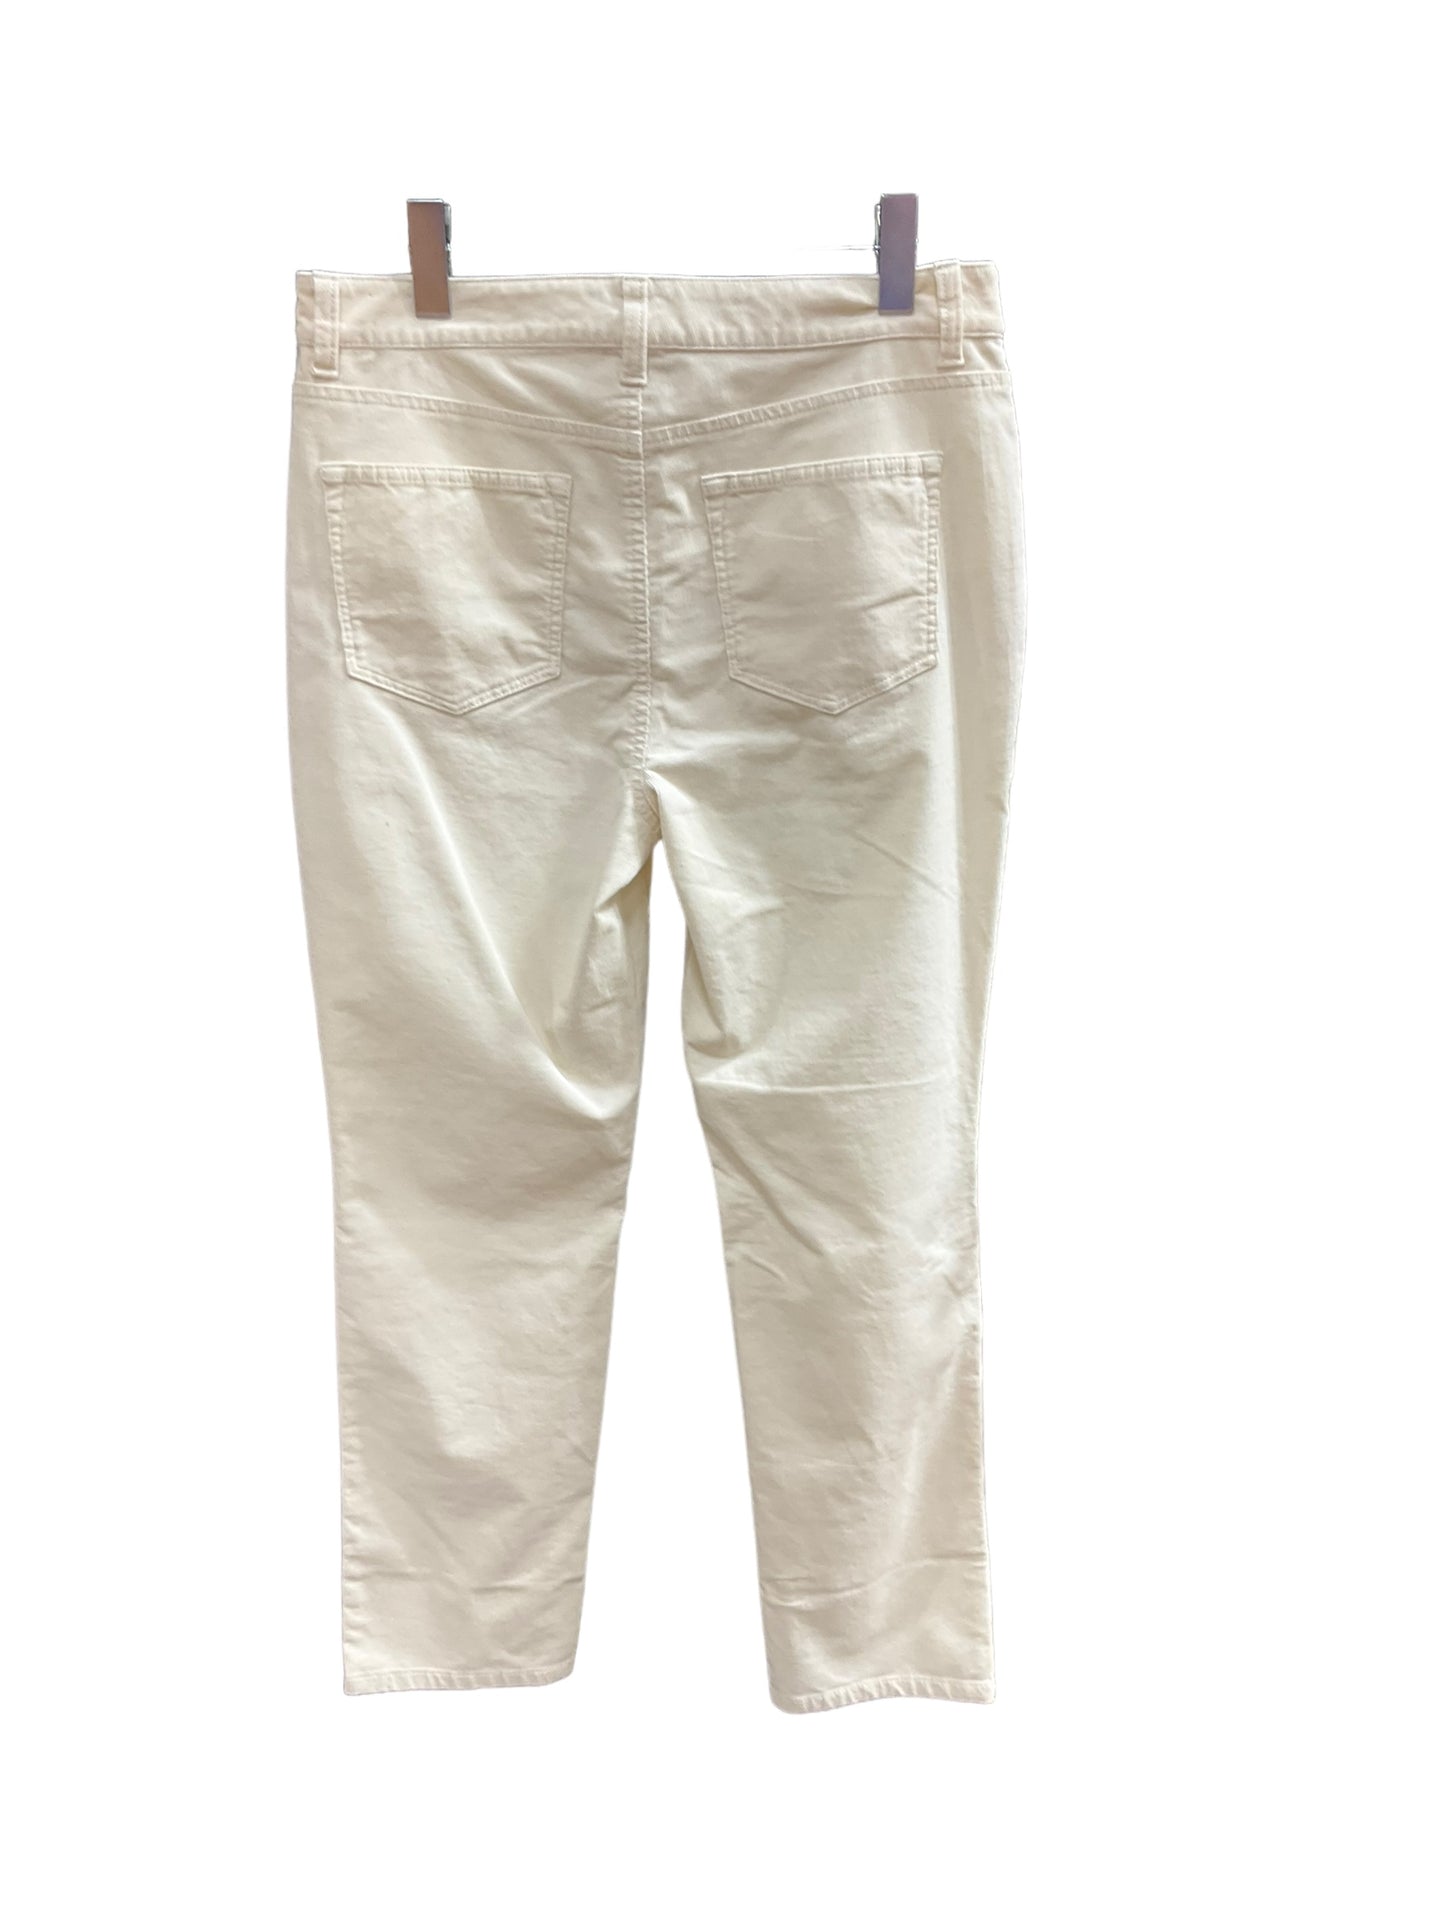 Pants Corduroy By Talbots  Size: 10petite